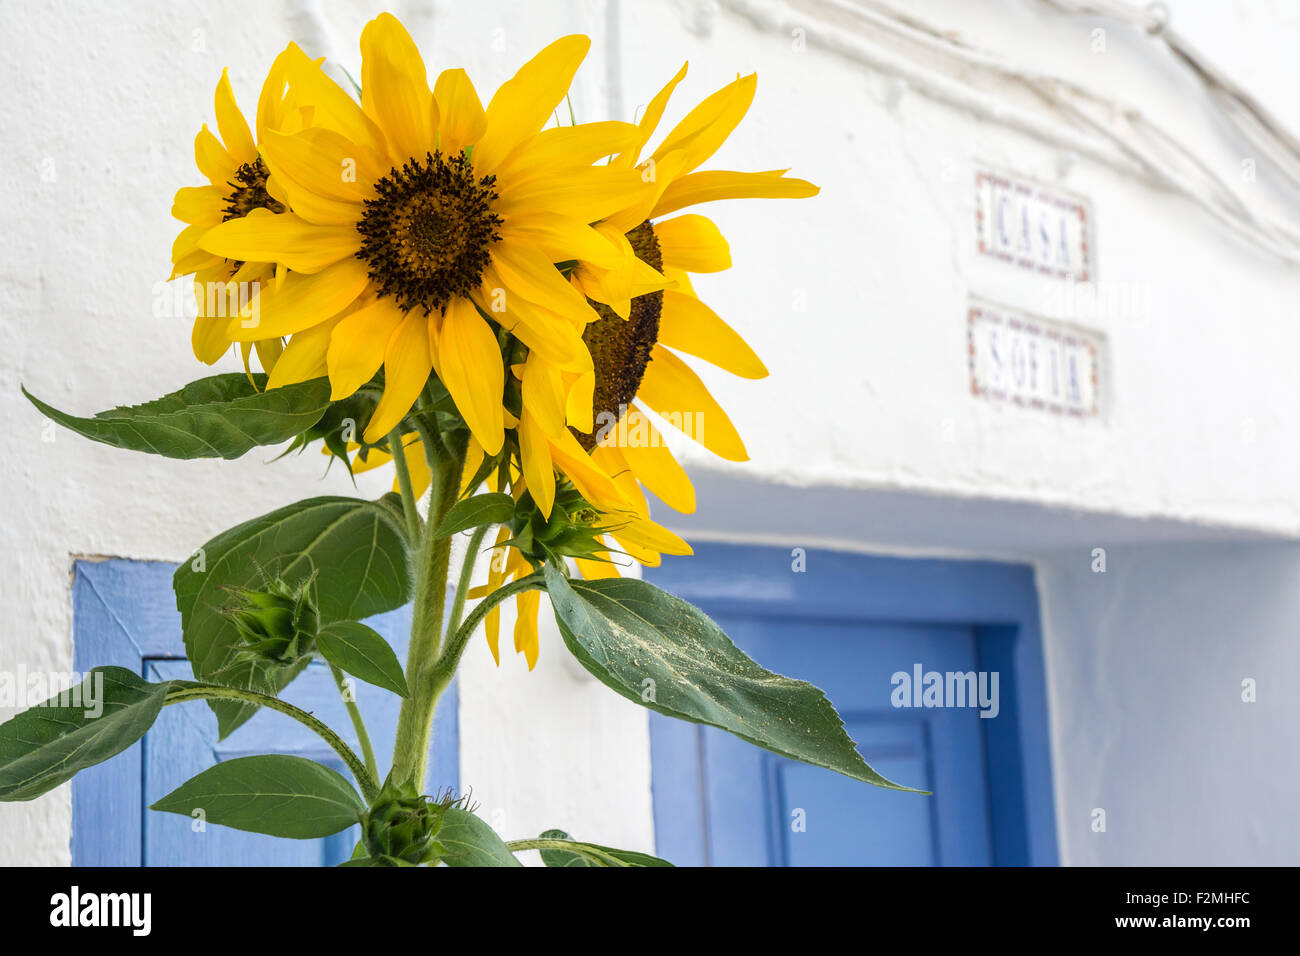 Spanish Sunflowers Stock Photo